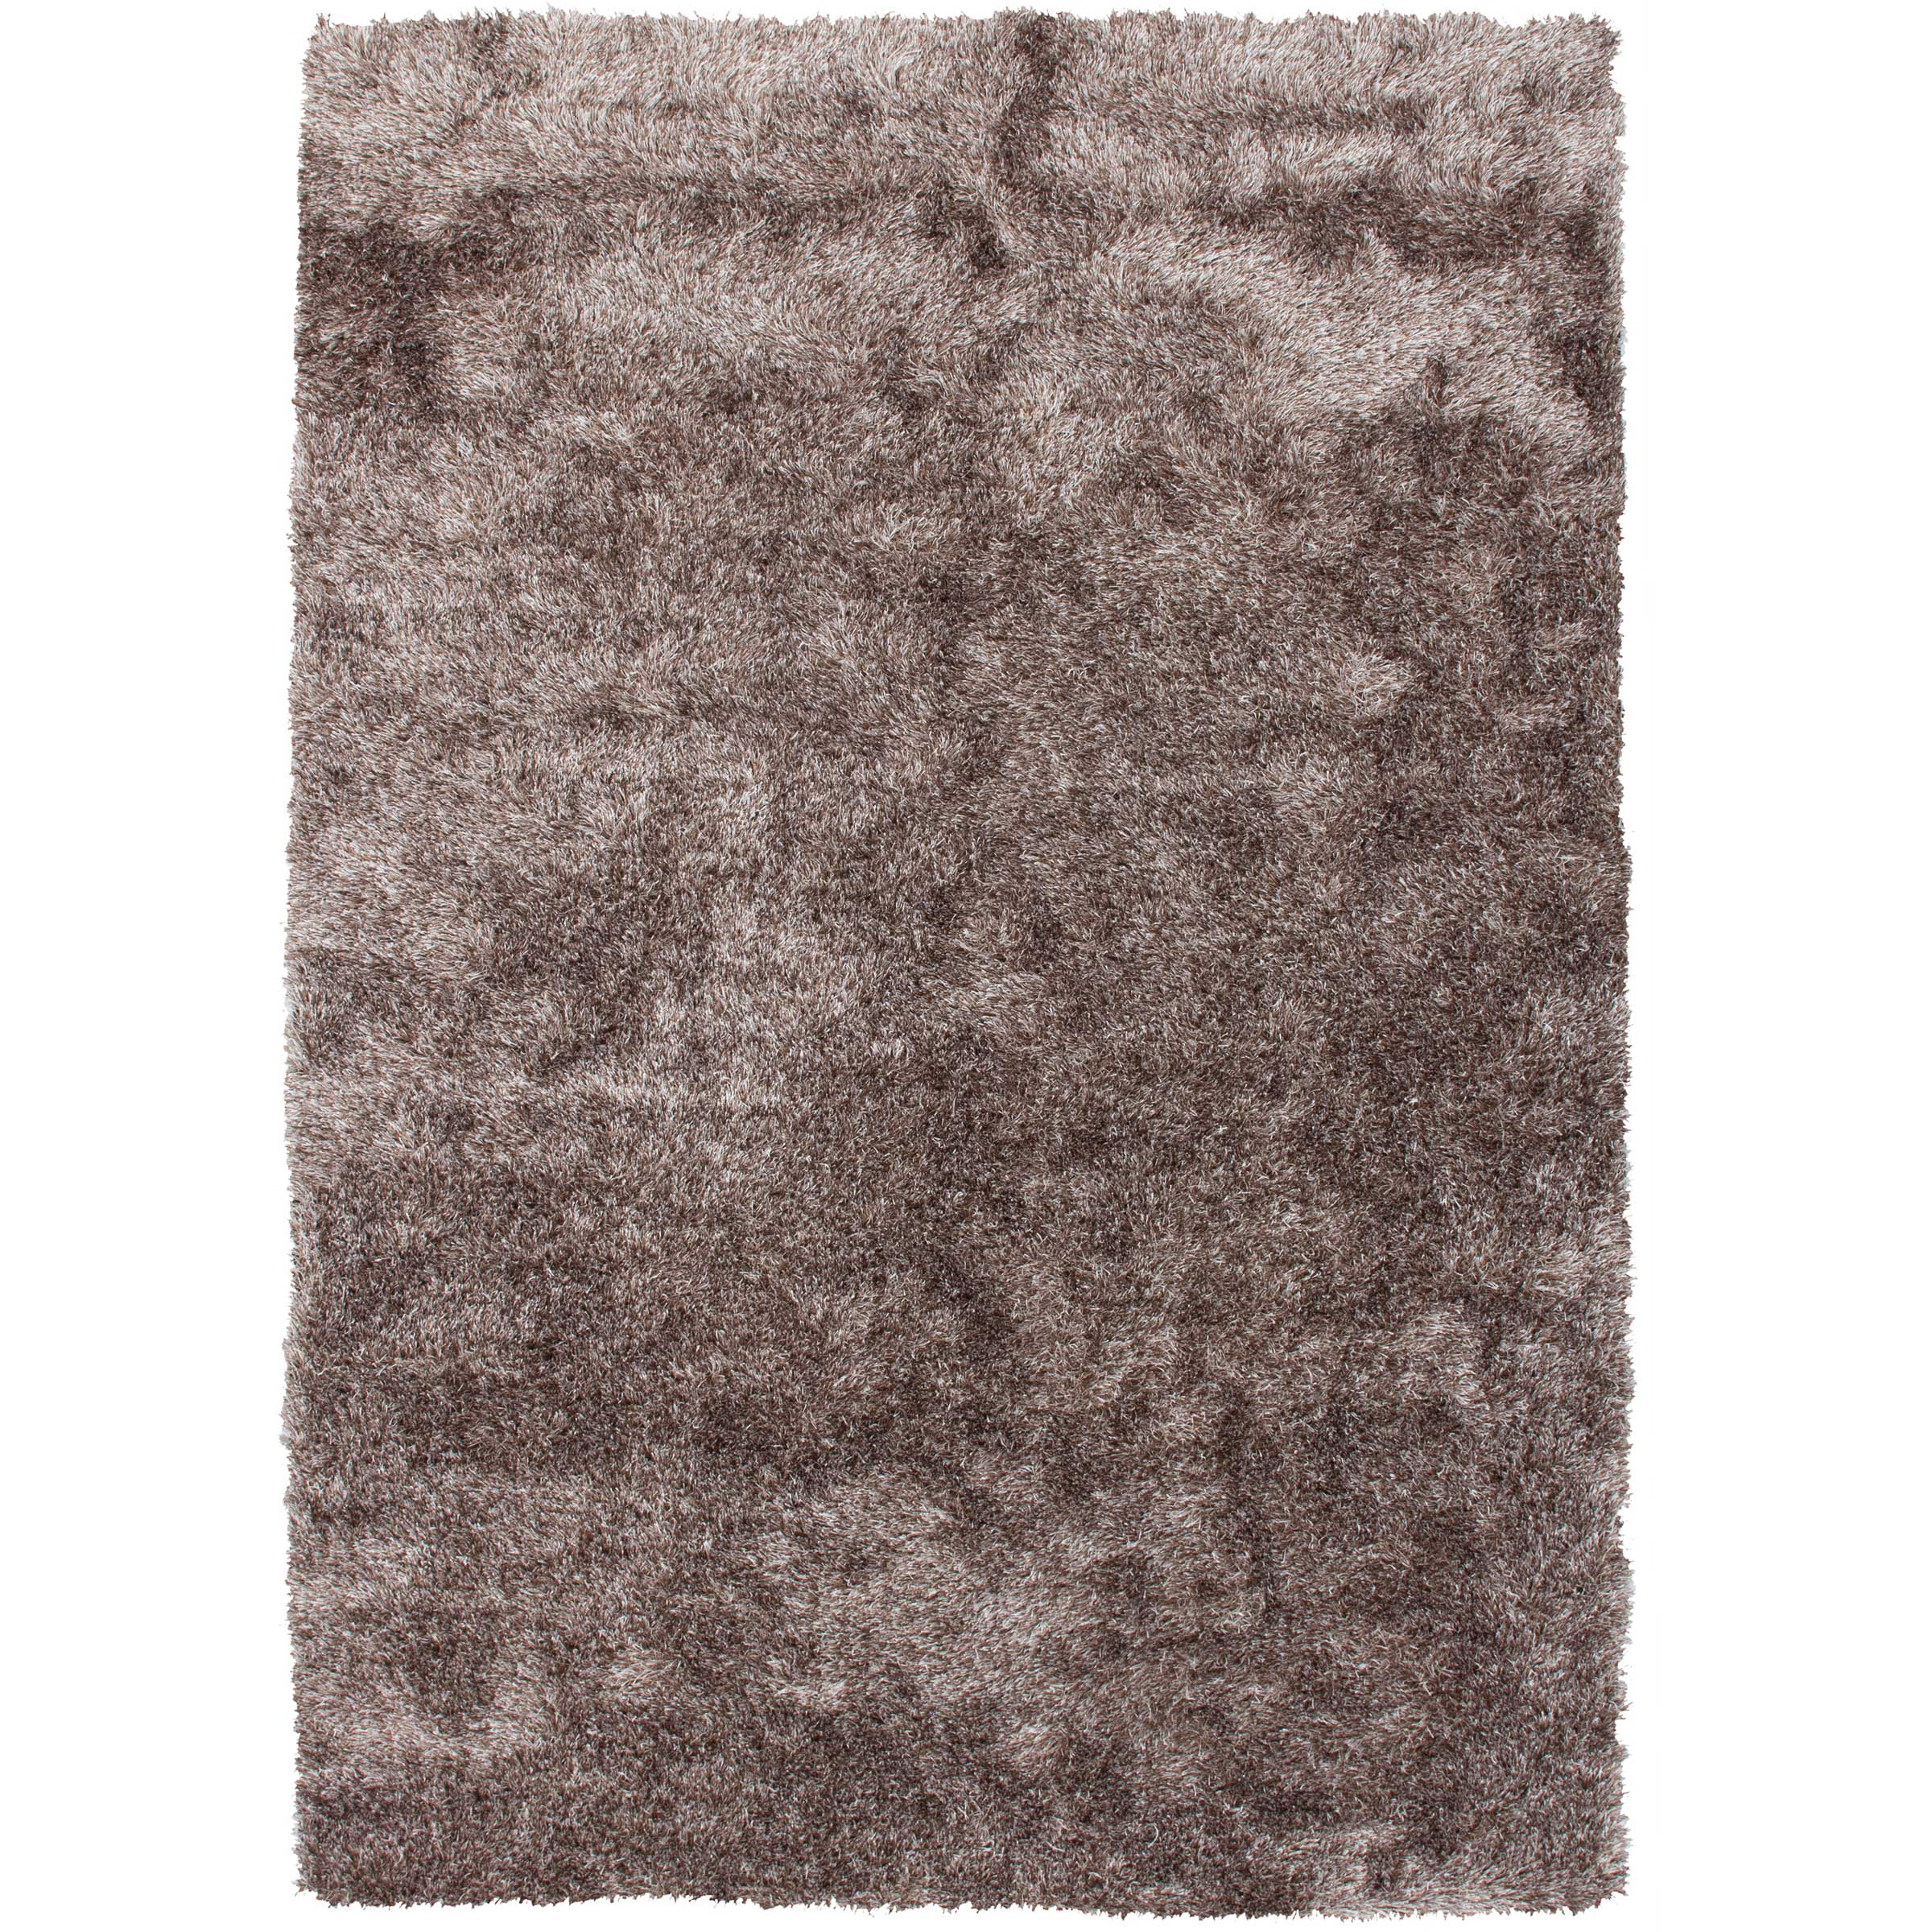 Vergevingsgezind Transparant krab Bruin shaggy karpet kopen? | Shaggy vloerkleden | kameraankleden.nl